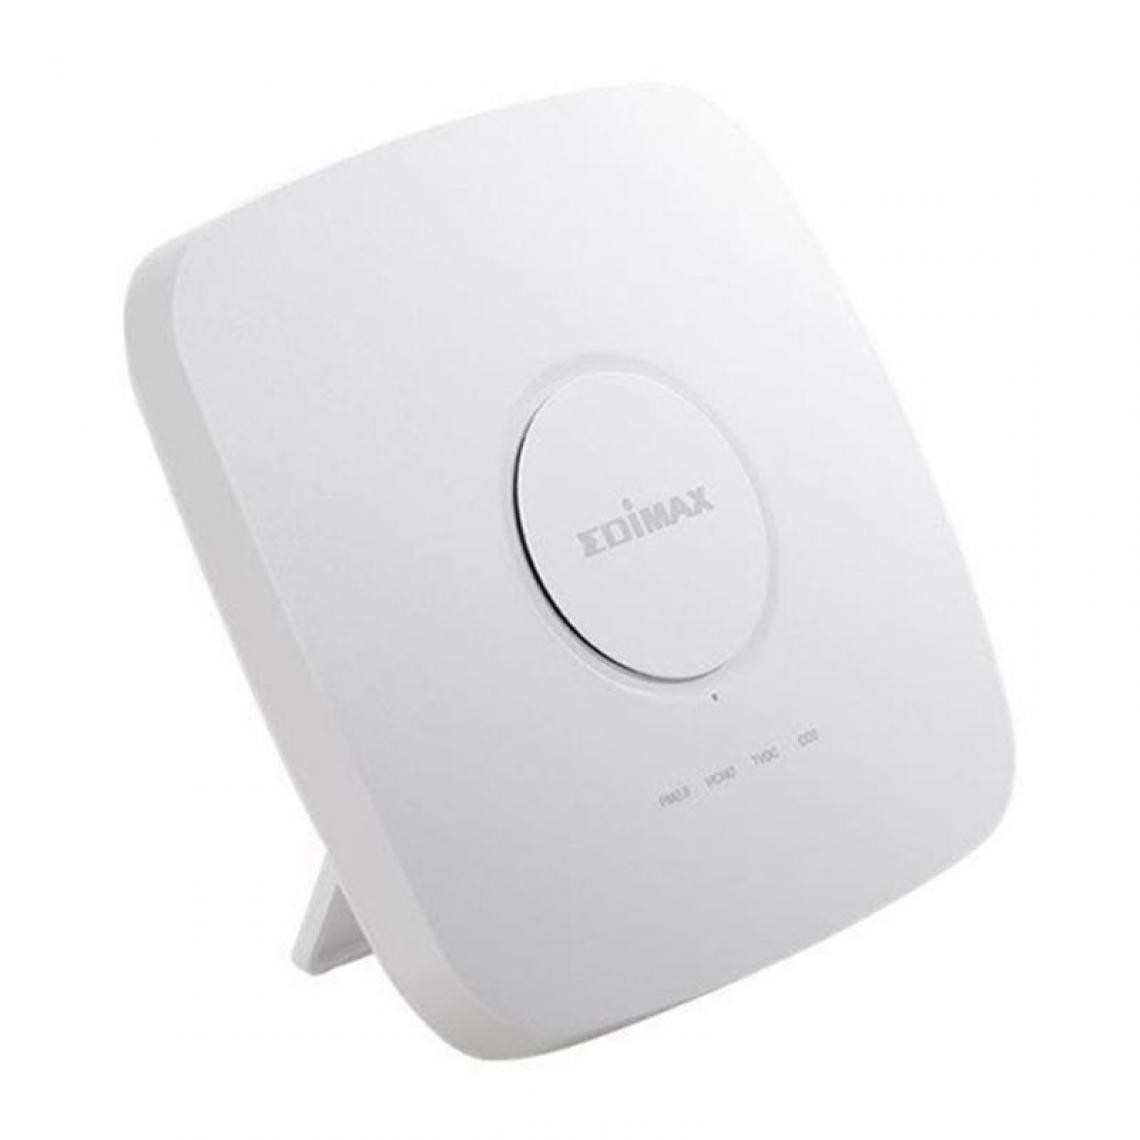 Optimum - Détecteur de Qualité d'Air pour Intérieurs Edimax AI-2002W WiFi Blanc - Détecteur connecté